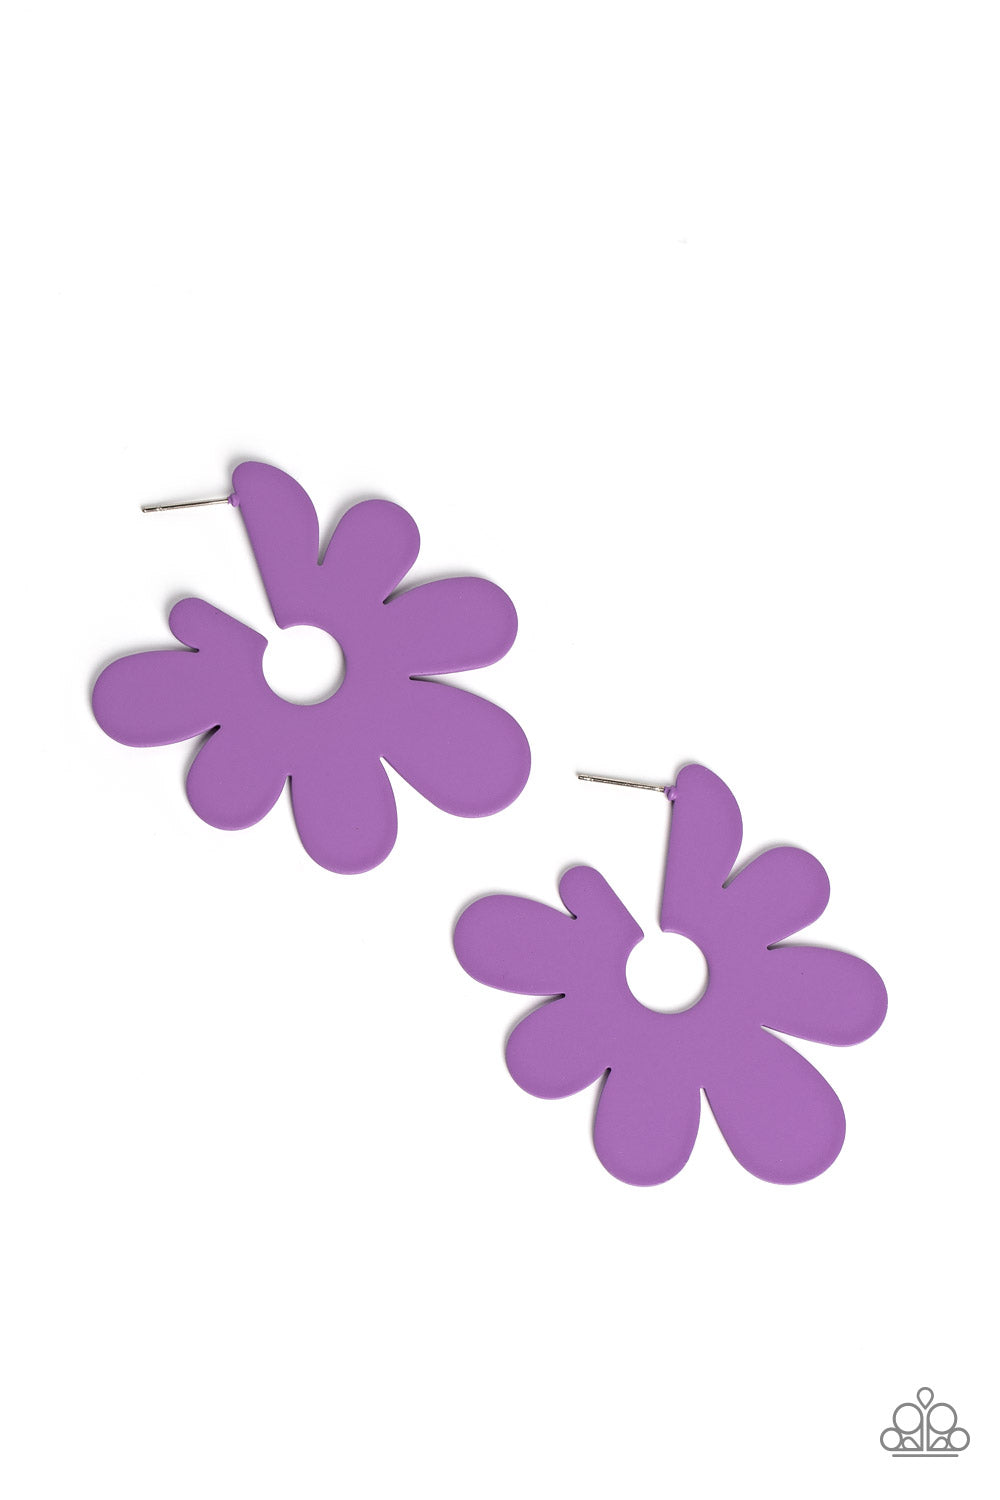 Paparazzi Accessories - Flower Power Fantasy #E332 Peg - Purple Earrings